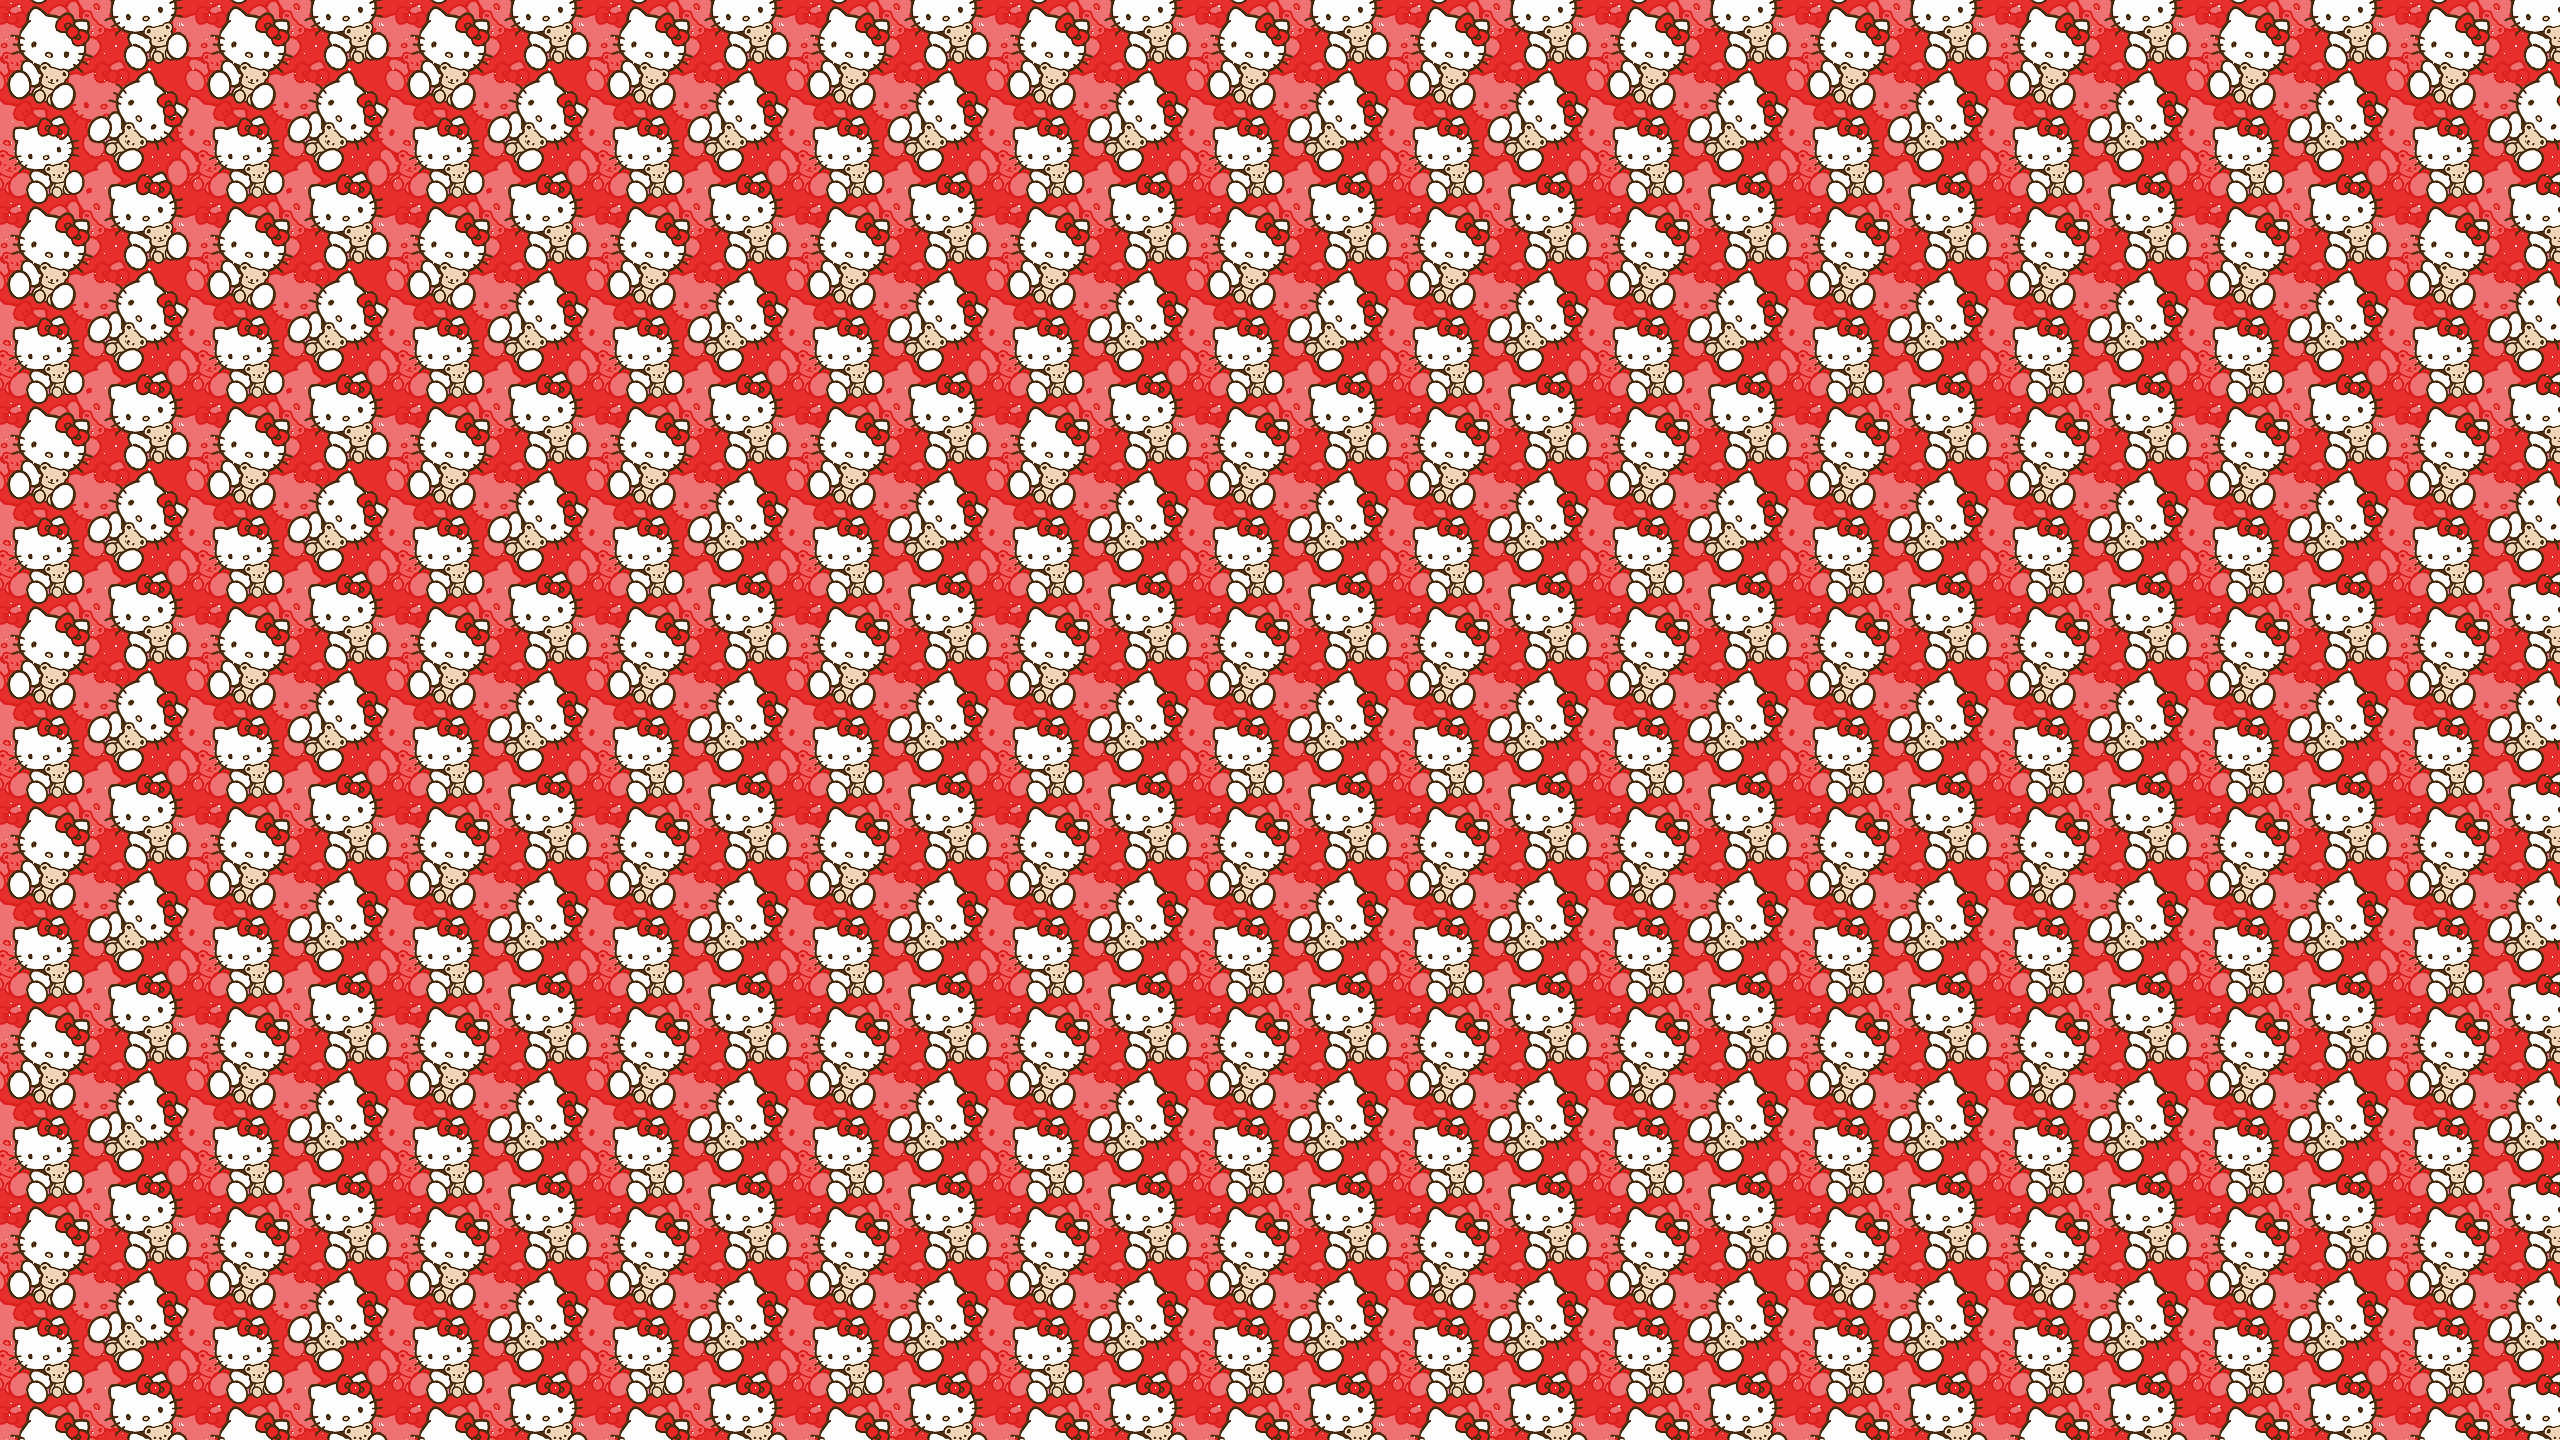 2560x1440 ... Hello Kitty pattern | fundos | Pinterest | Hello kitty, Kitty and .